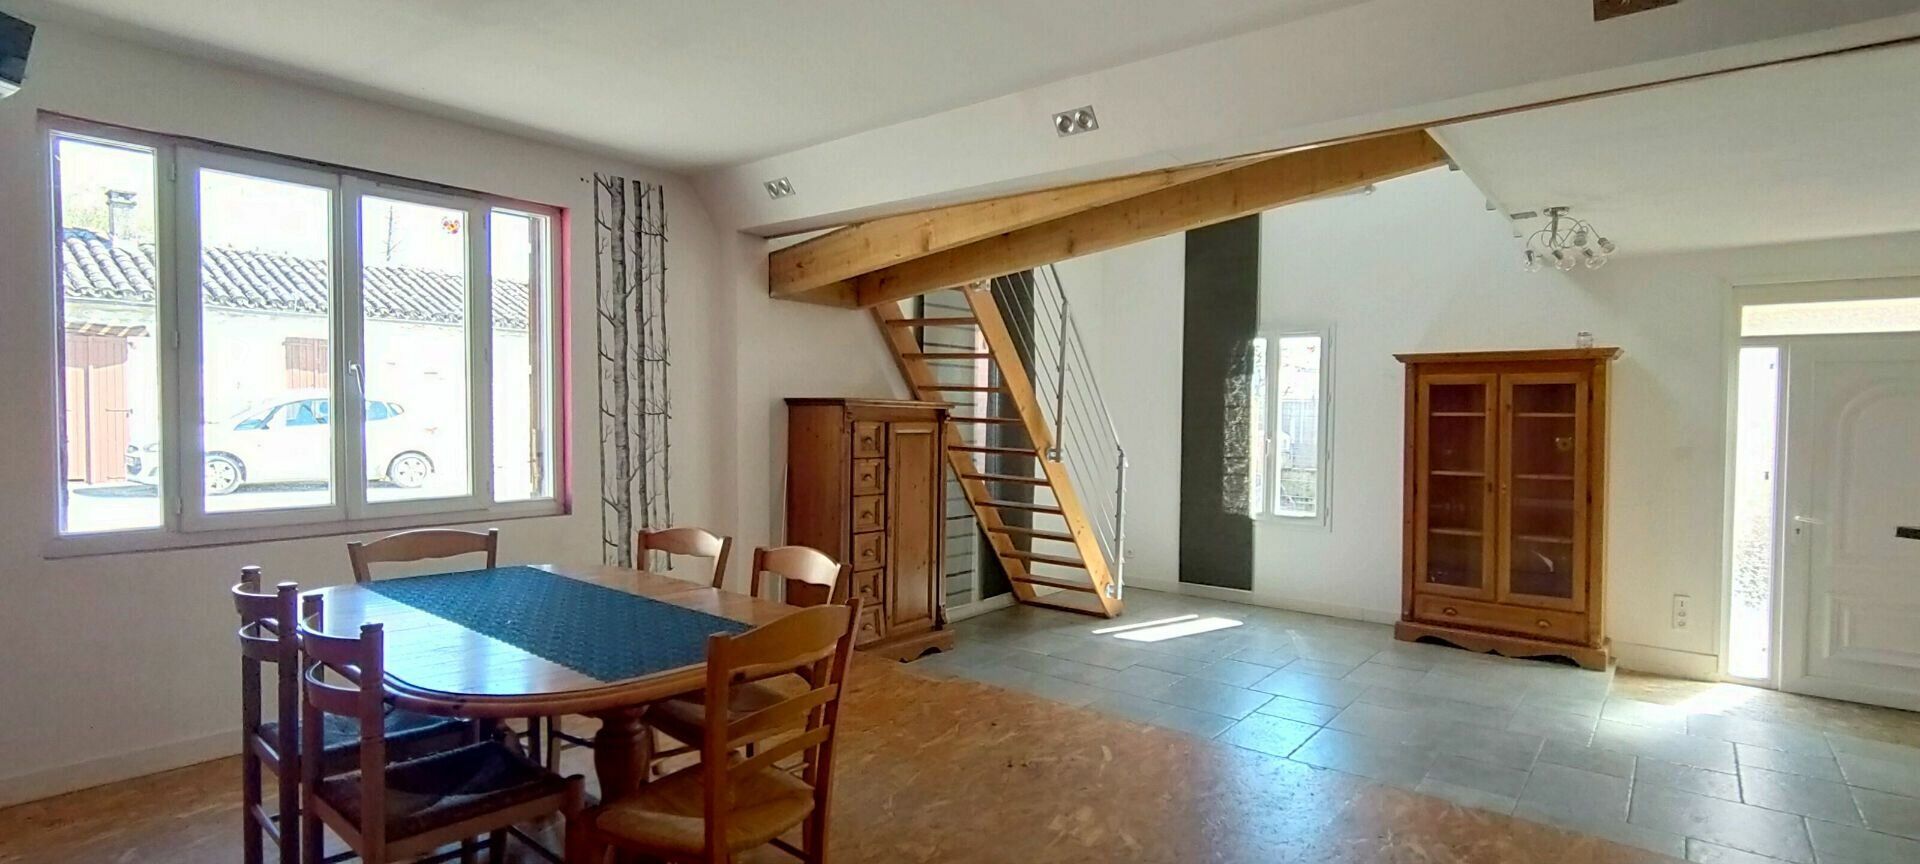 Maison à vendre 5 120m2 à Montpezat-de-Quercy vignette-3